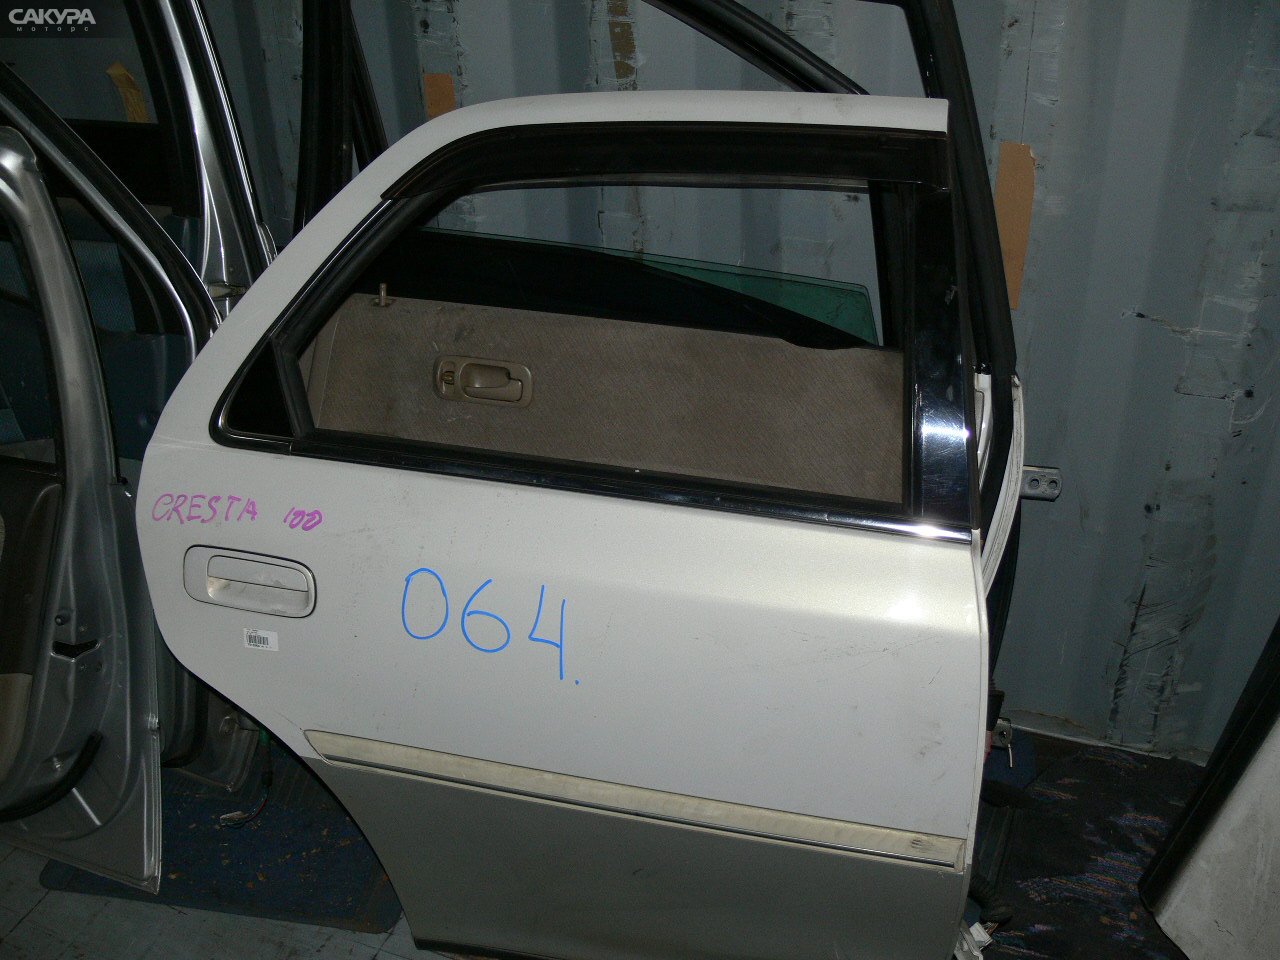 Дверь боковая задняя правая Toyota Cresta GX100: купить в Сакура Иркутск.